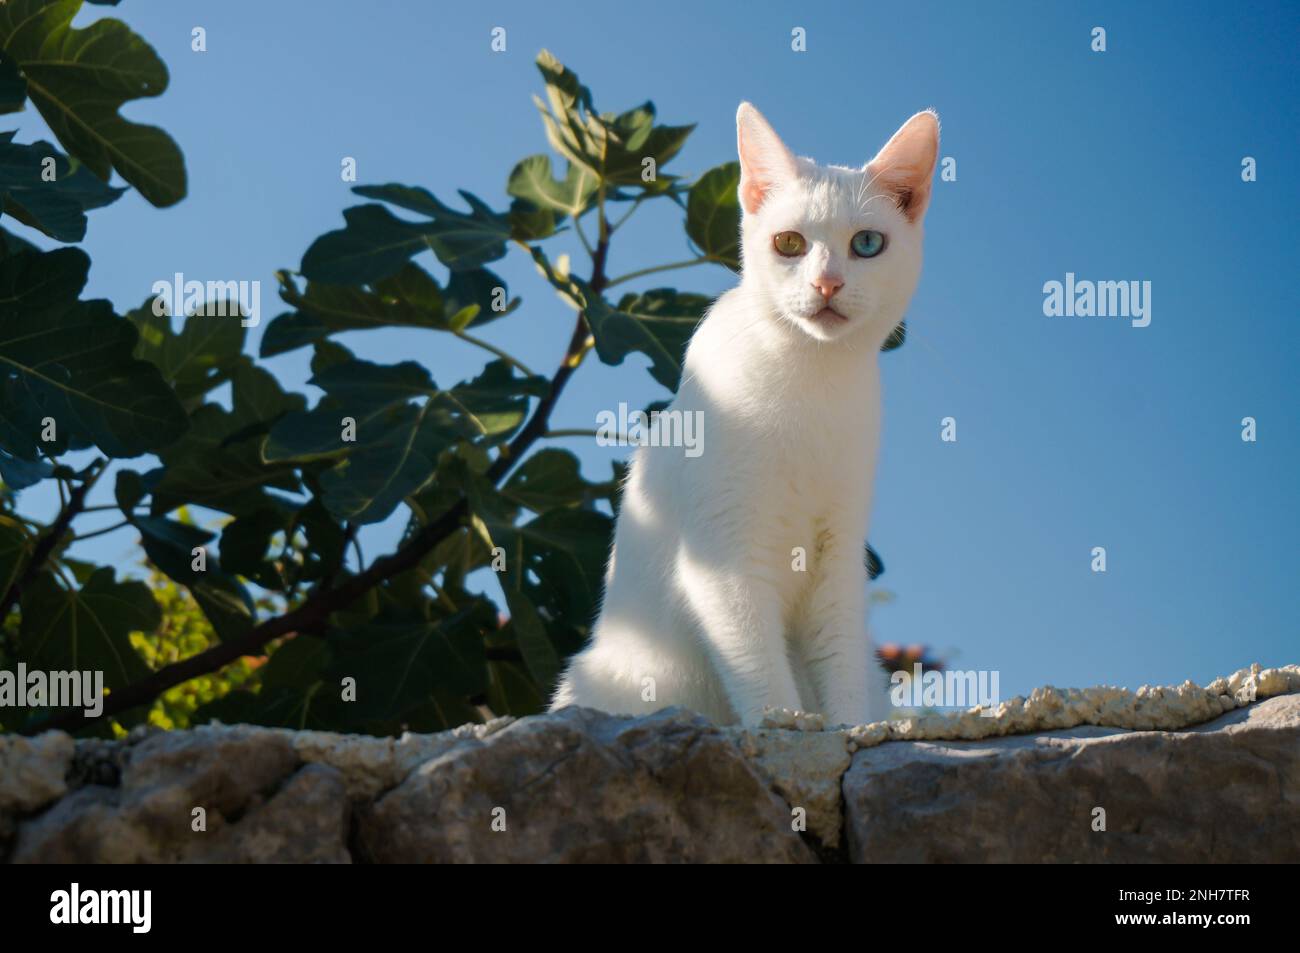 un chat blanc avec un œil vert et un œil bleu se trouve sur un mur. ciel bleu et feuilles en arrière-plan. chat avec une couleur d'oeil inhabituelle. Banque D'Images